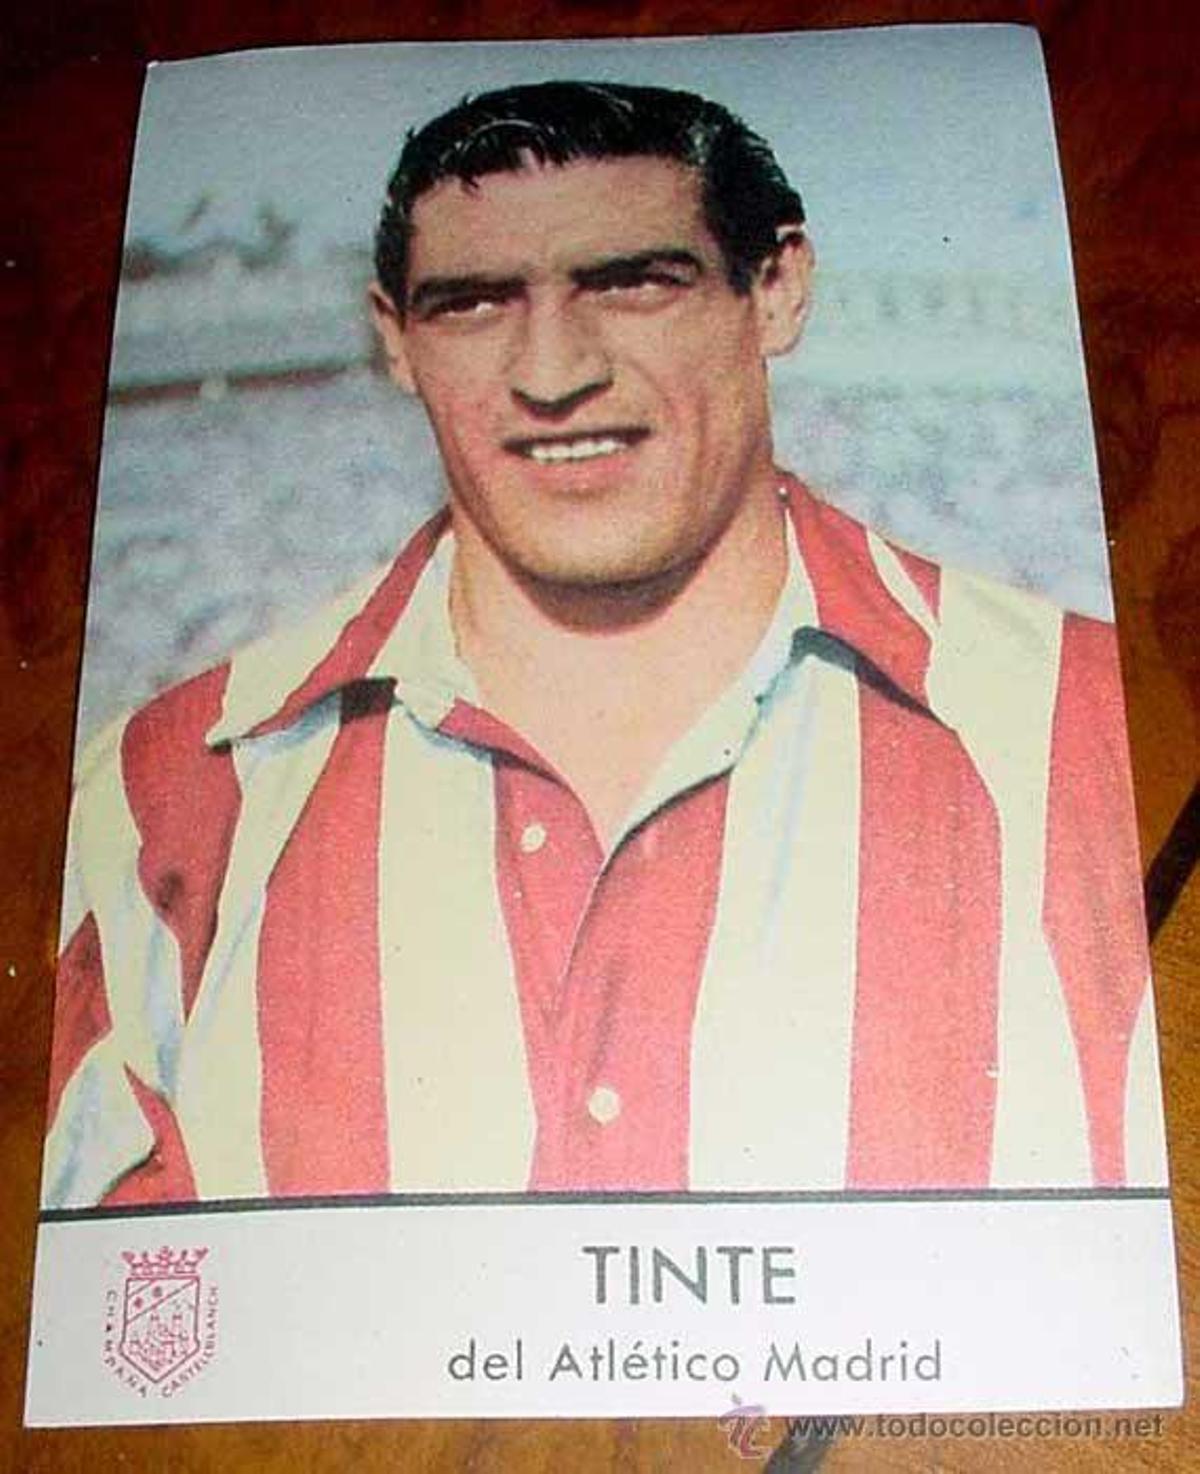 Tinte, en un cromo de la época, con el Atlético.